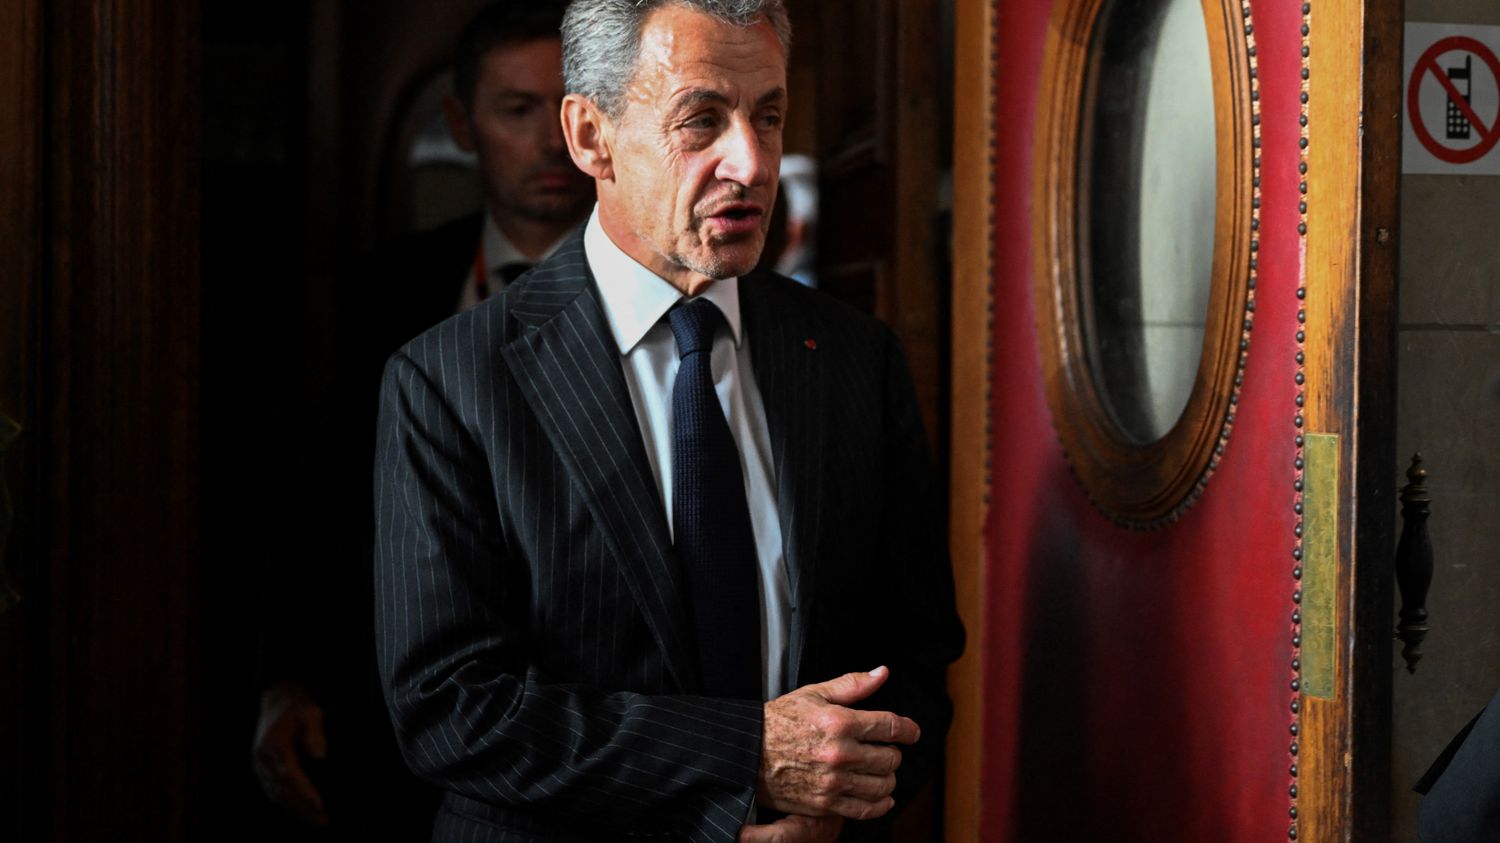 Cour de cassation, mises en examen et affaires en cours : ce qui attend Nicolas Sarkozy sur le front judiciaire